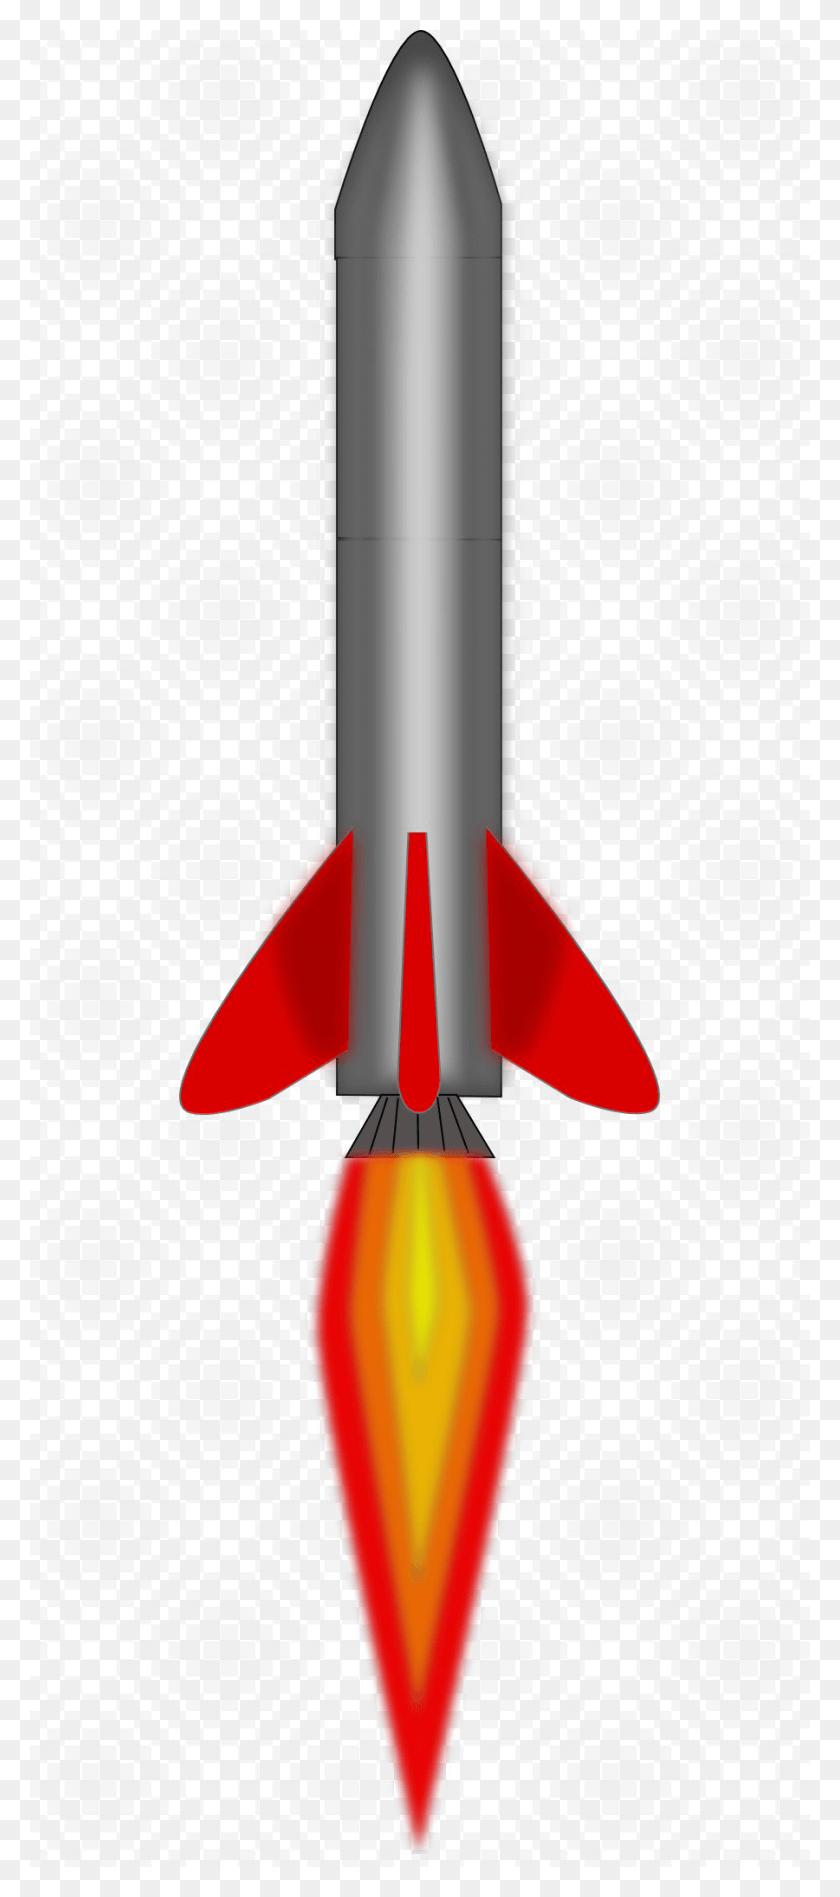 900x2120 Ядерная Ракета Изображение С Прозрачным Фоном Ракета, Транспортное Средство, Транспорт Hd Png Скачать